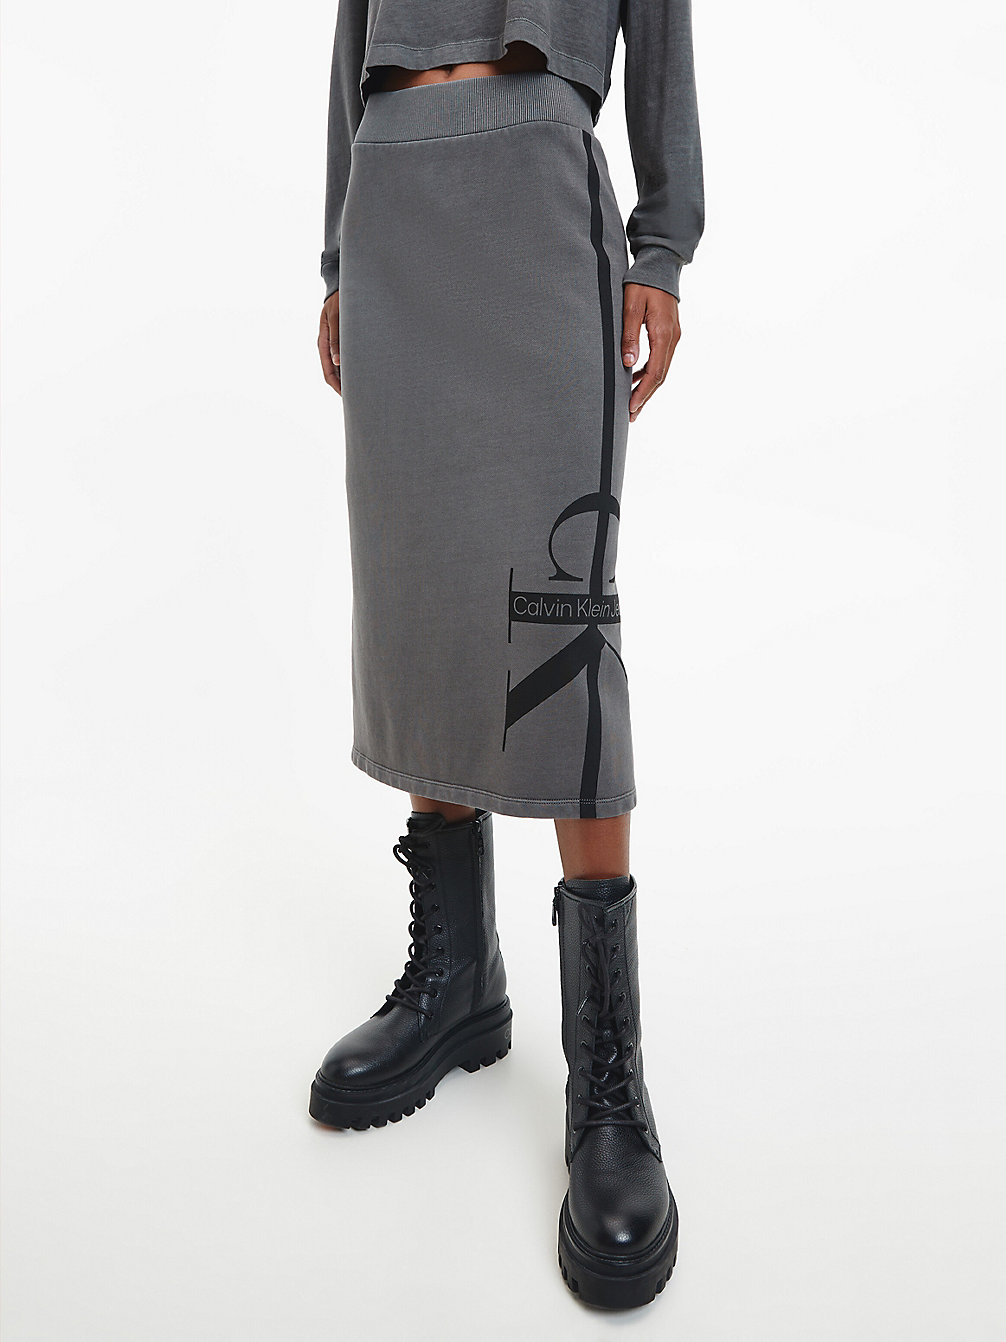 INDUSTRIAL GREY Jupe Longueur Midi En Éponge De Coton Avec Logo undefined femmes Calvin Klein